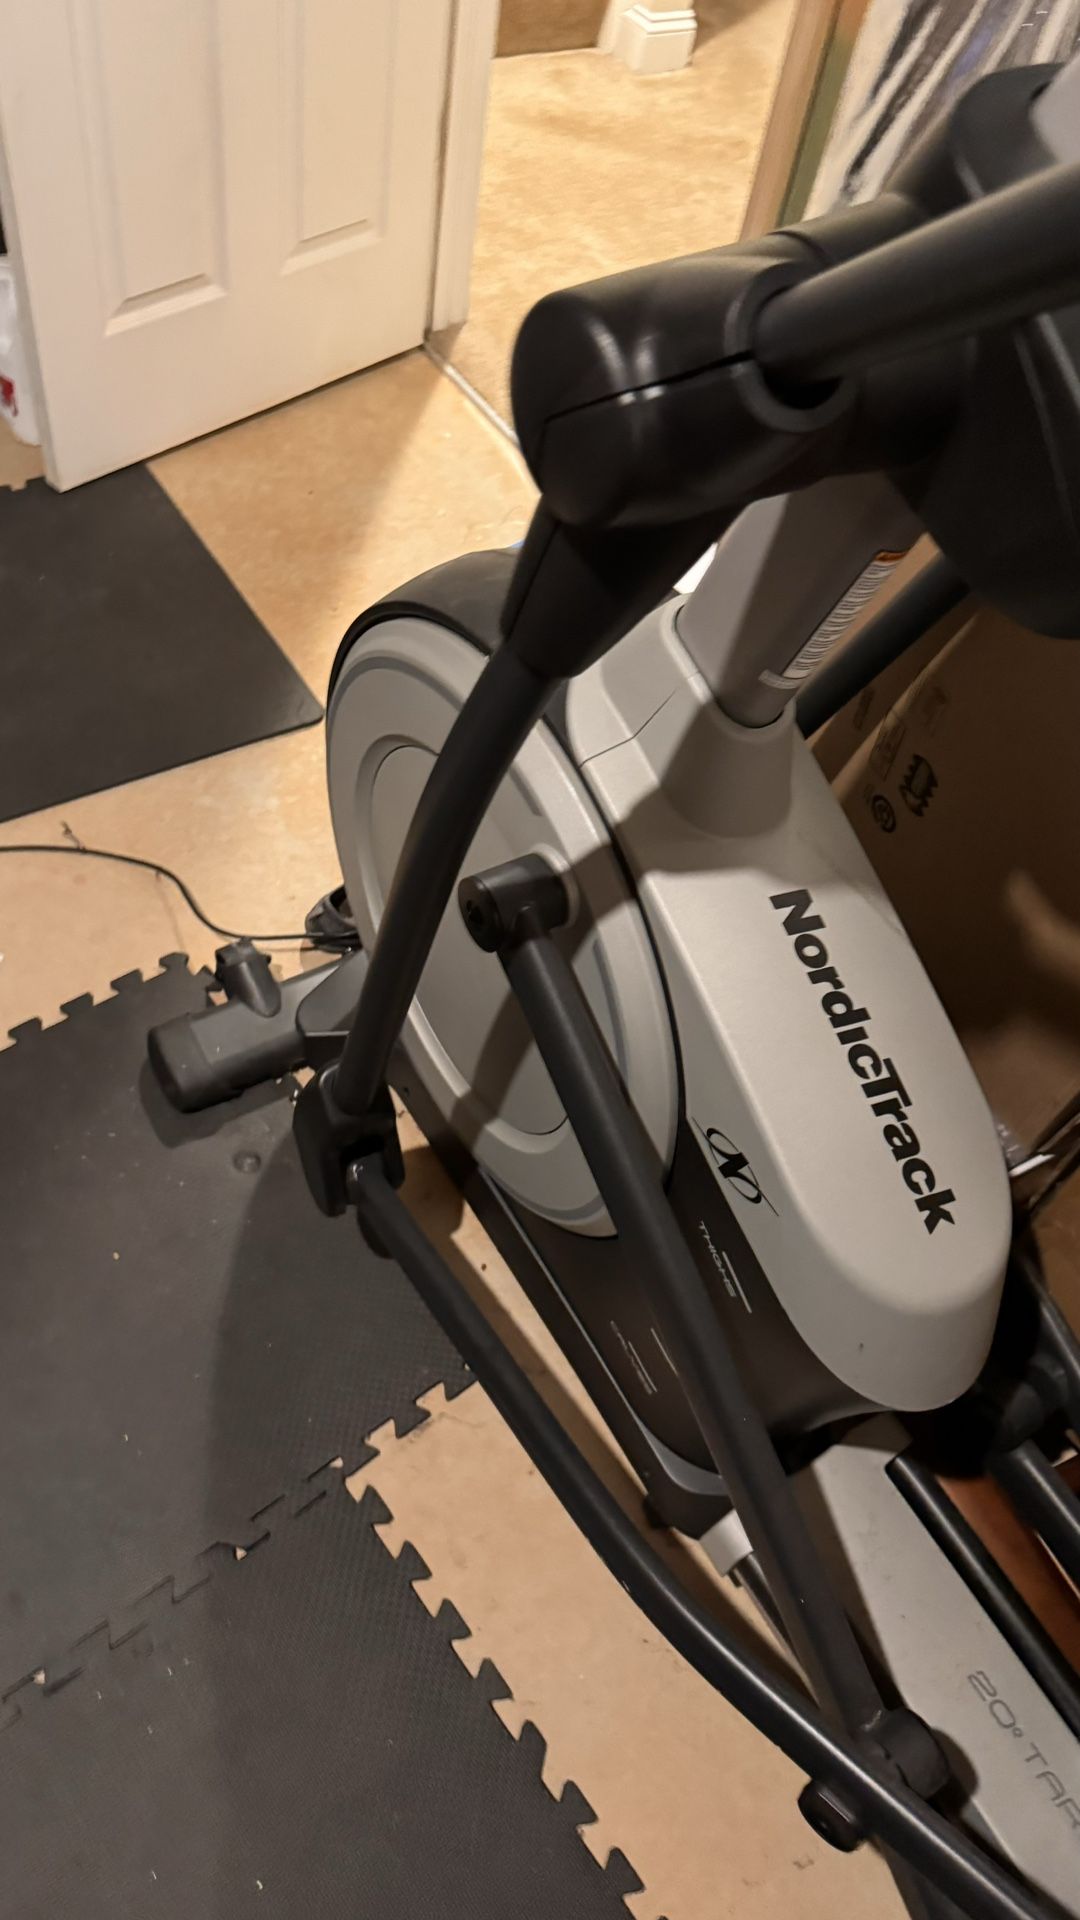 Nordic Track elliptical Machine - Like new